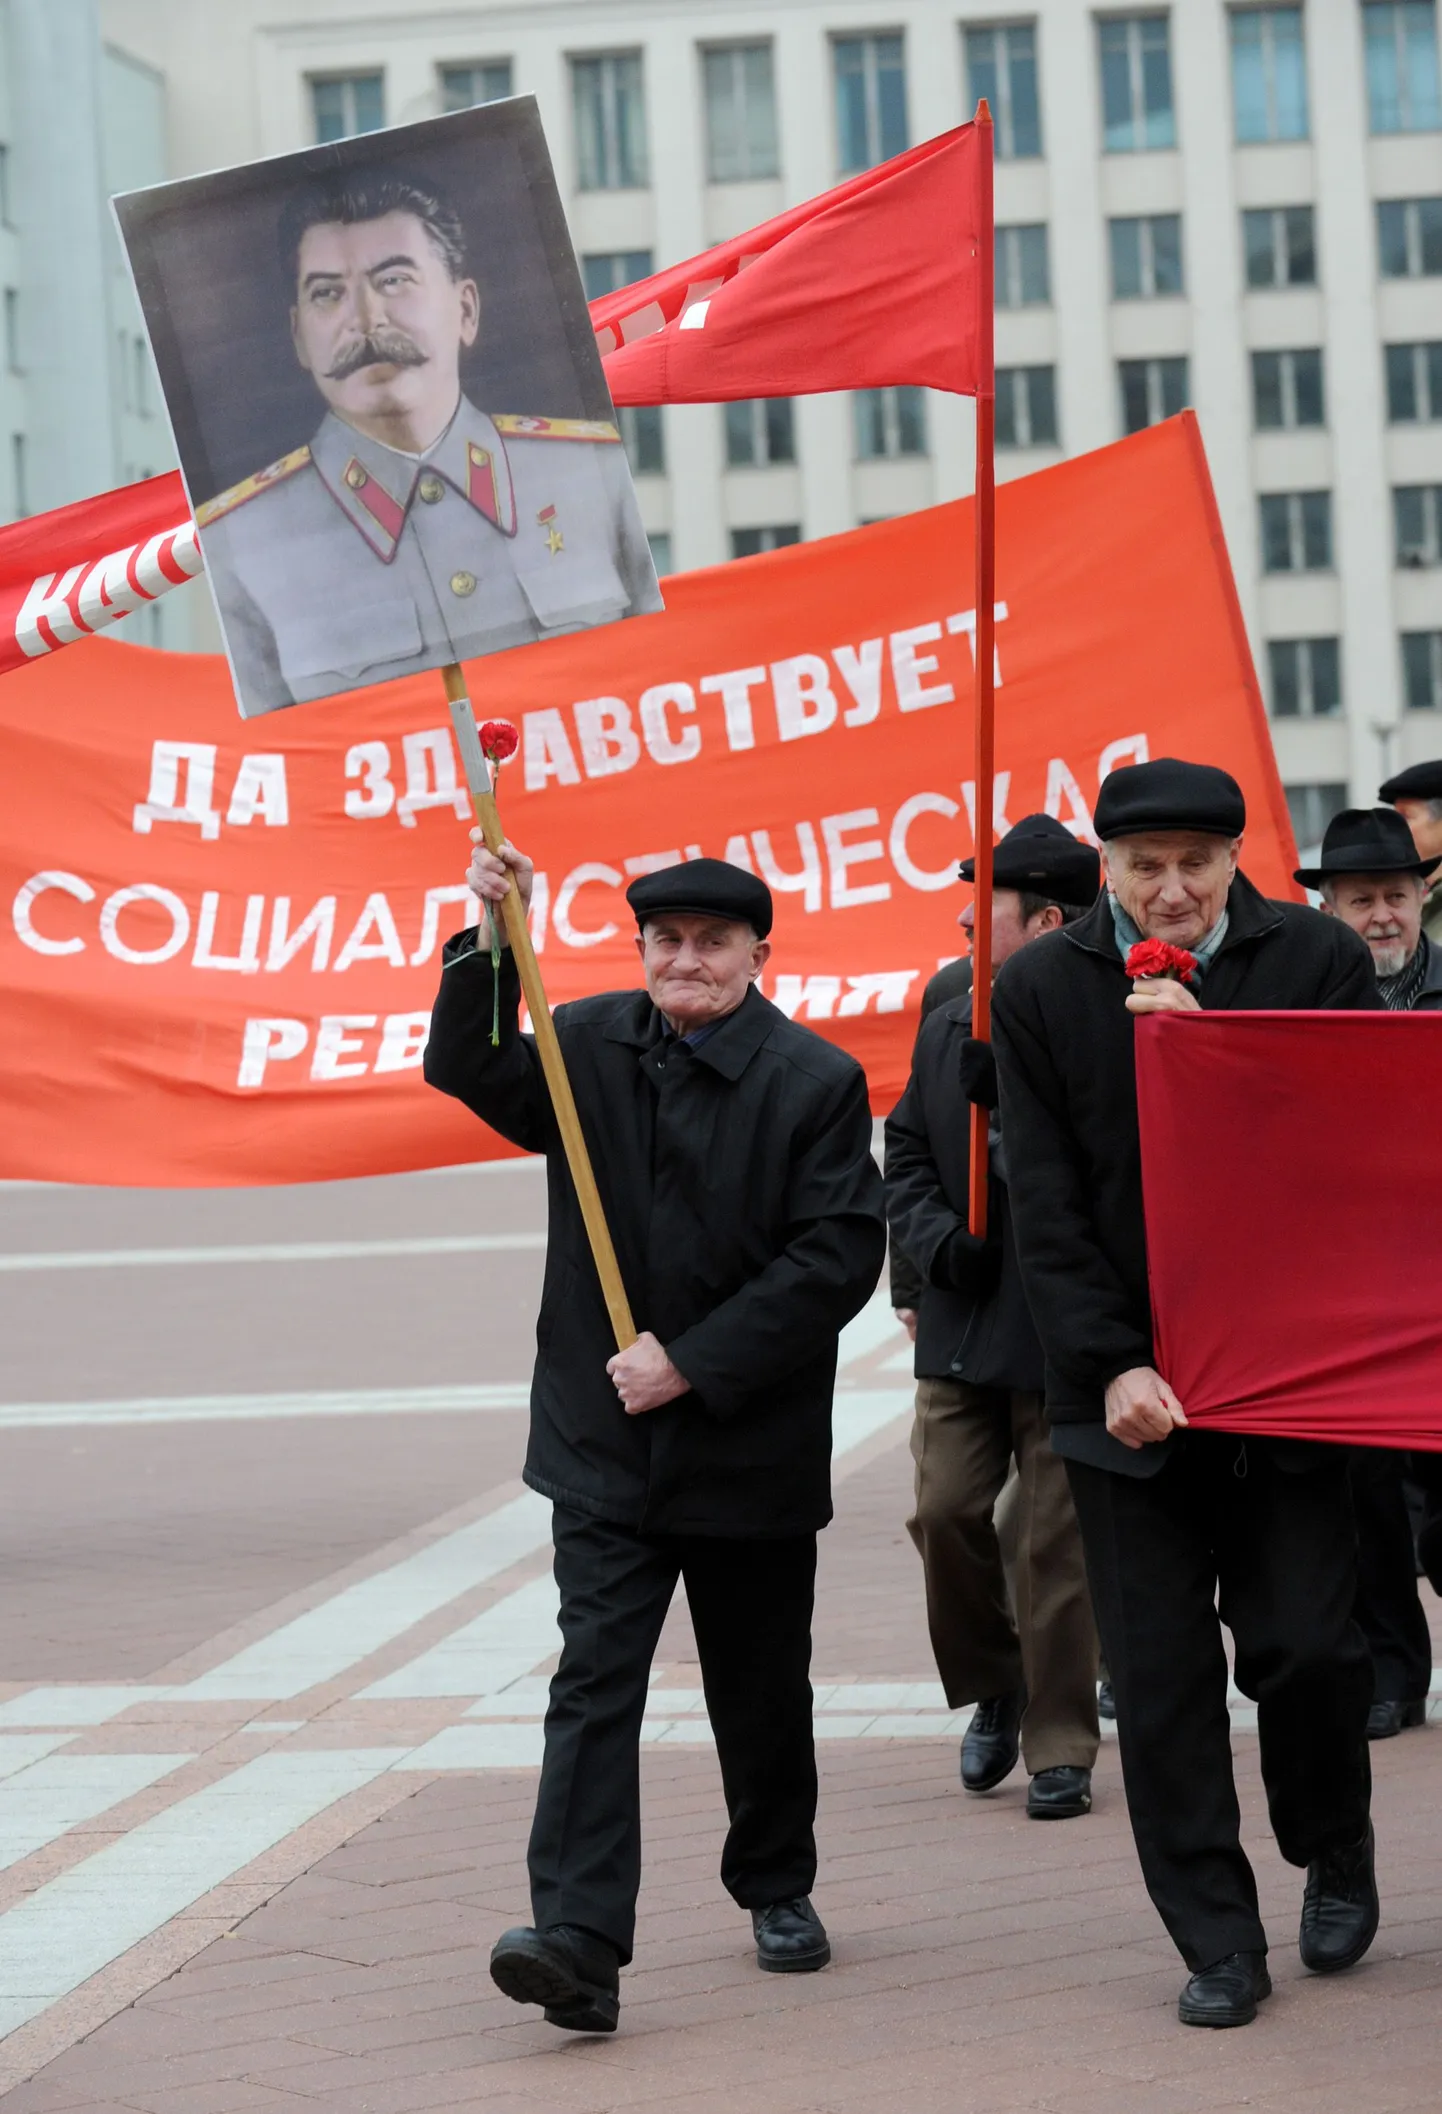 Valgevene kommunistide demonstratsioon Minskis novembris 2012. Esiplaanil Jossif Stalini portree.